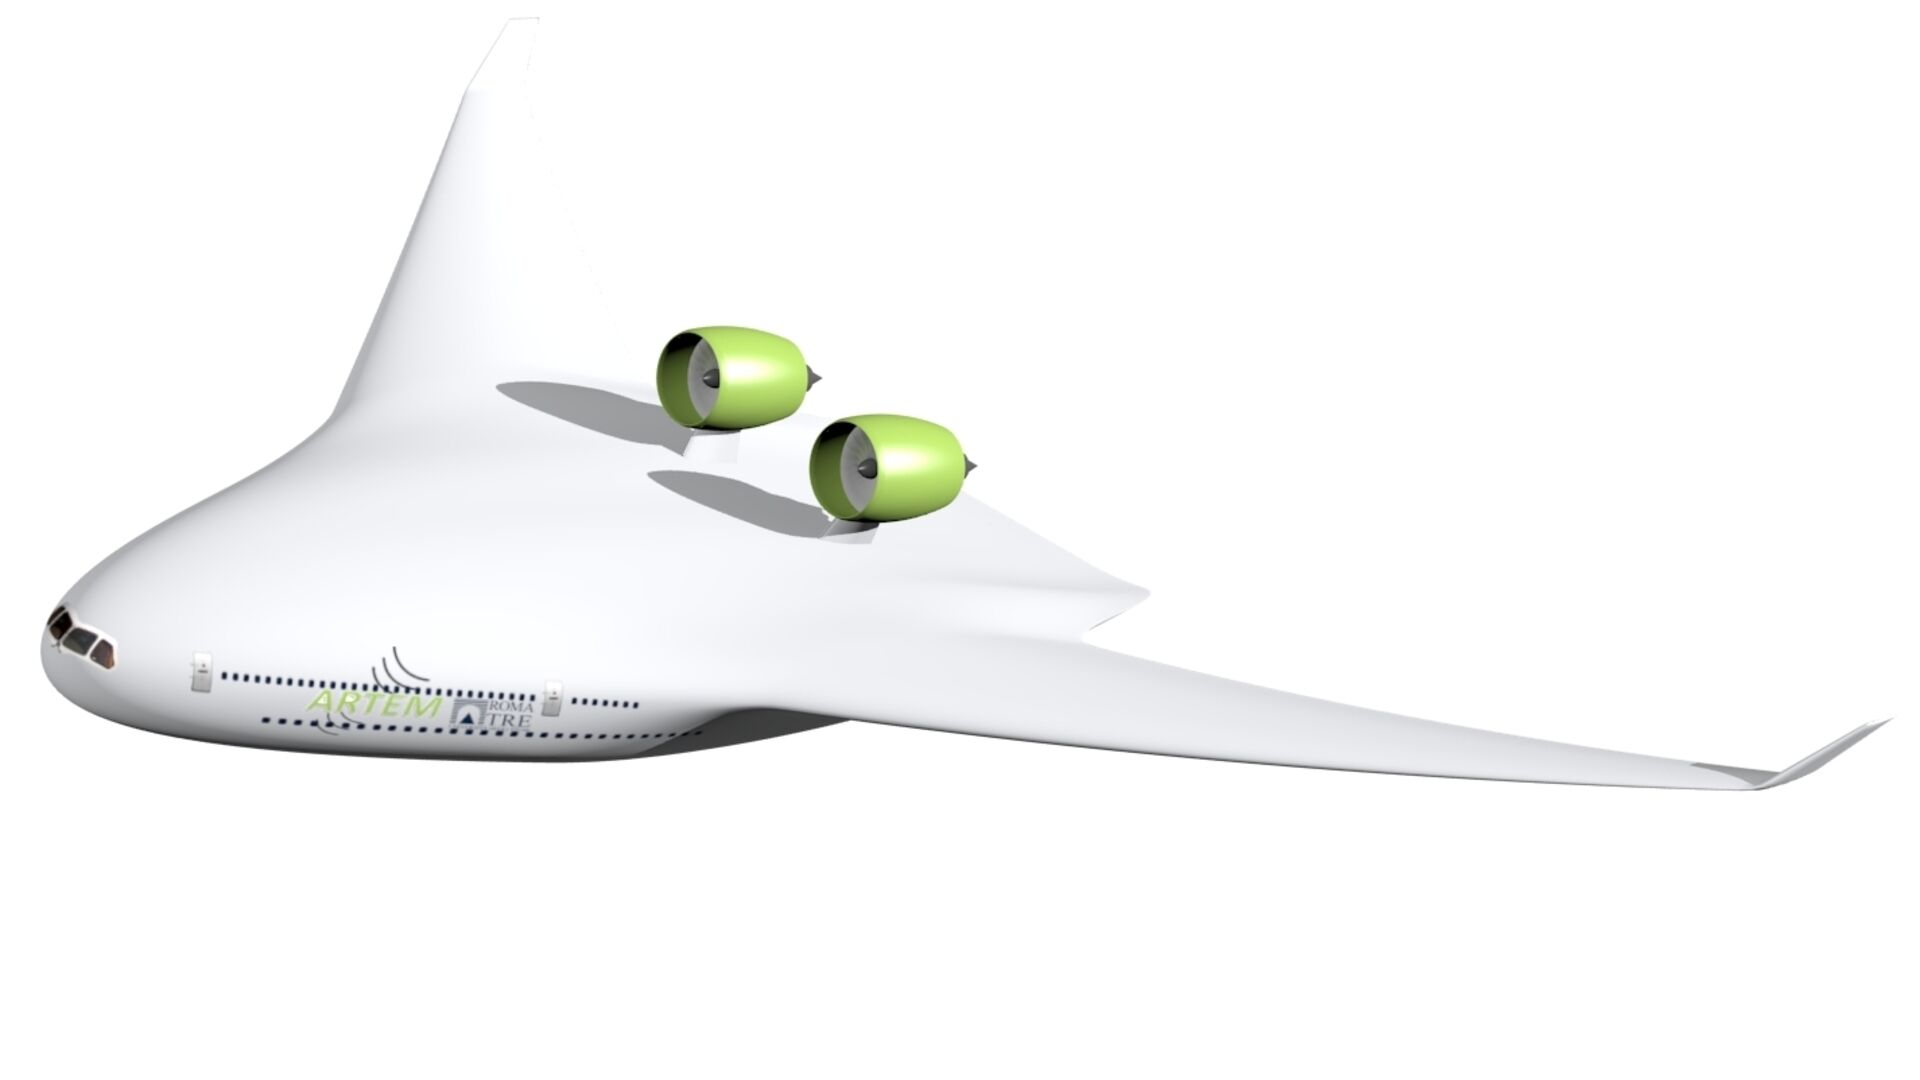 Rumore: le configurazioni di aeromobili del 2035 e 2050, in sigla BWB, immaginate dal progetto ARTEM dell’Unione Europea